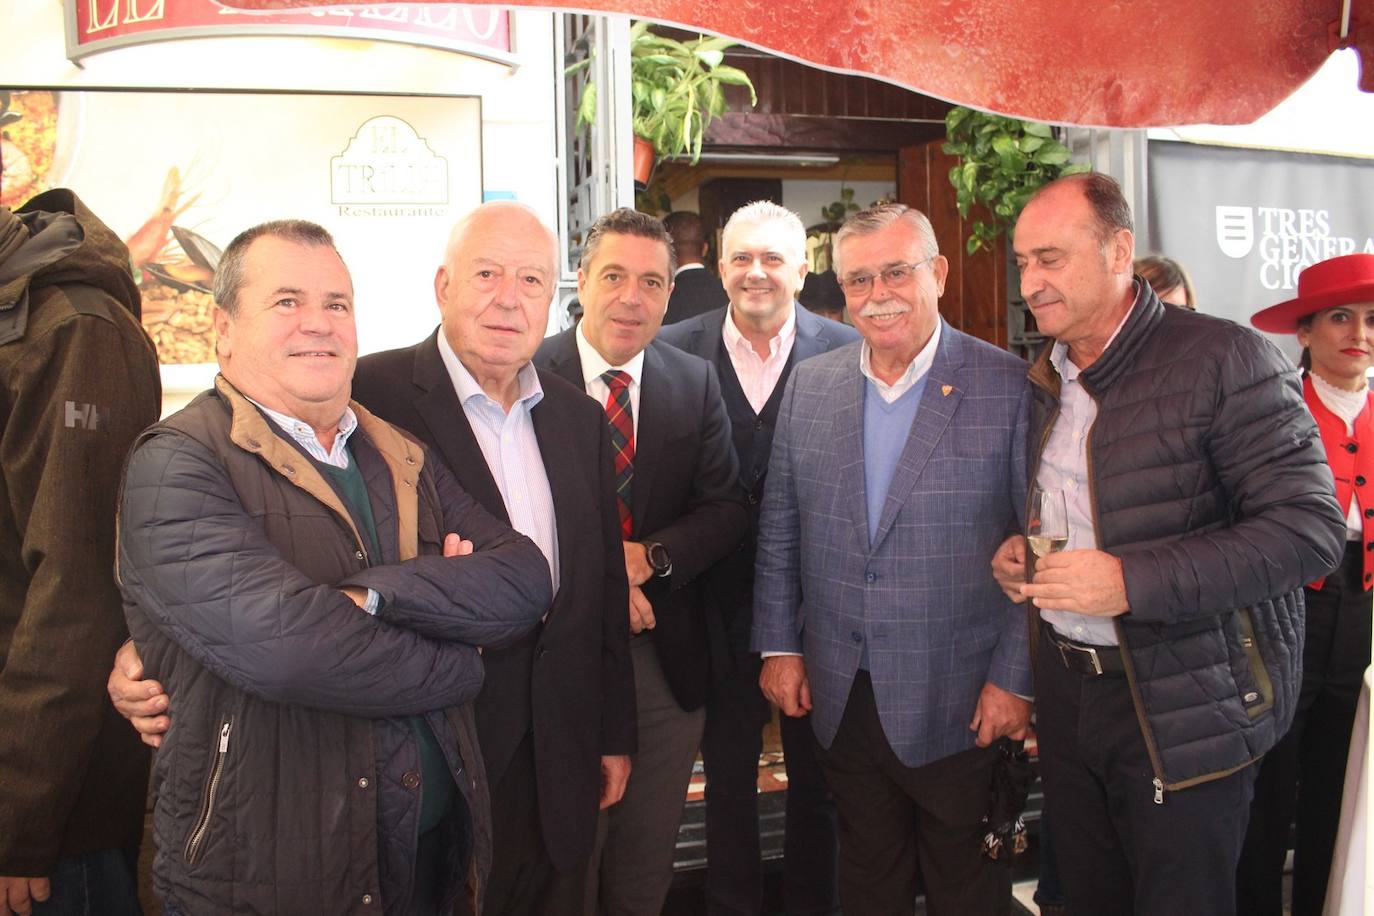 Eduardo Rueda, Juan Lara, Juan A. Lara, Paco Valverde, Francisco Martín Aguilar y Juan Luis Pinto en unas jornadas gastronómicas de El Trillo.